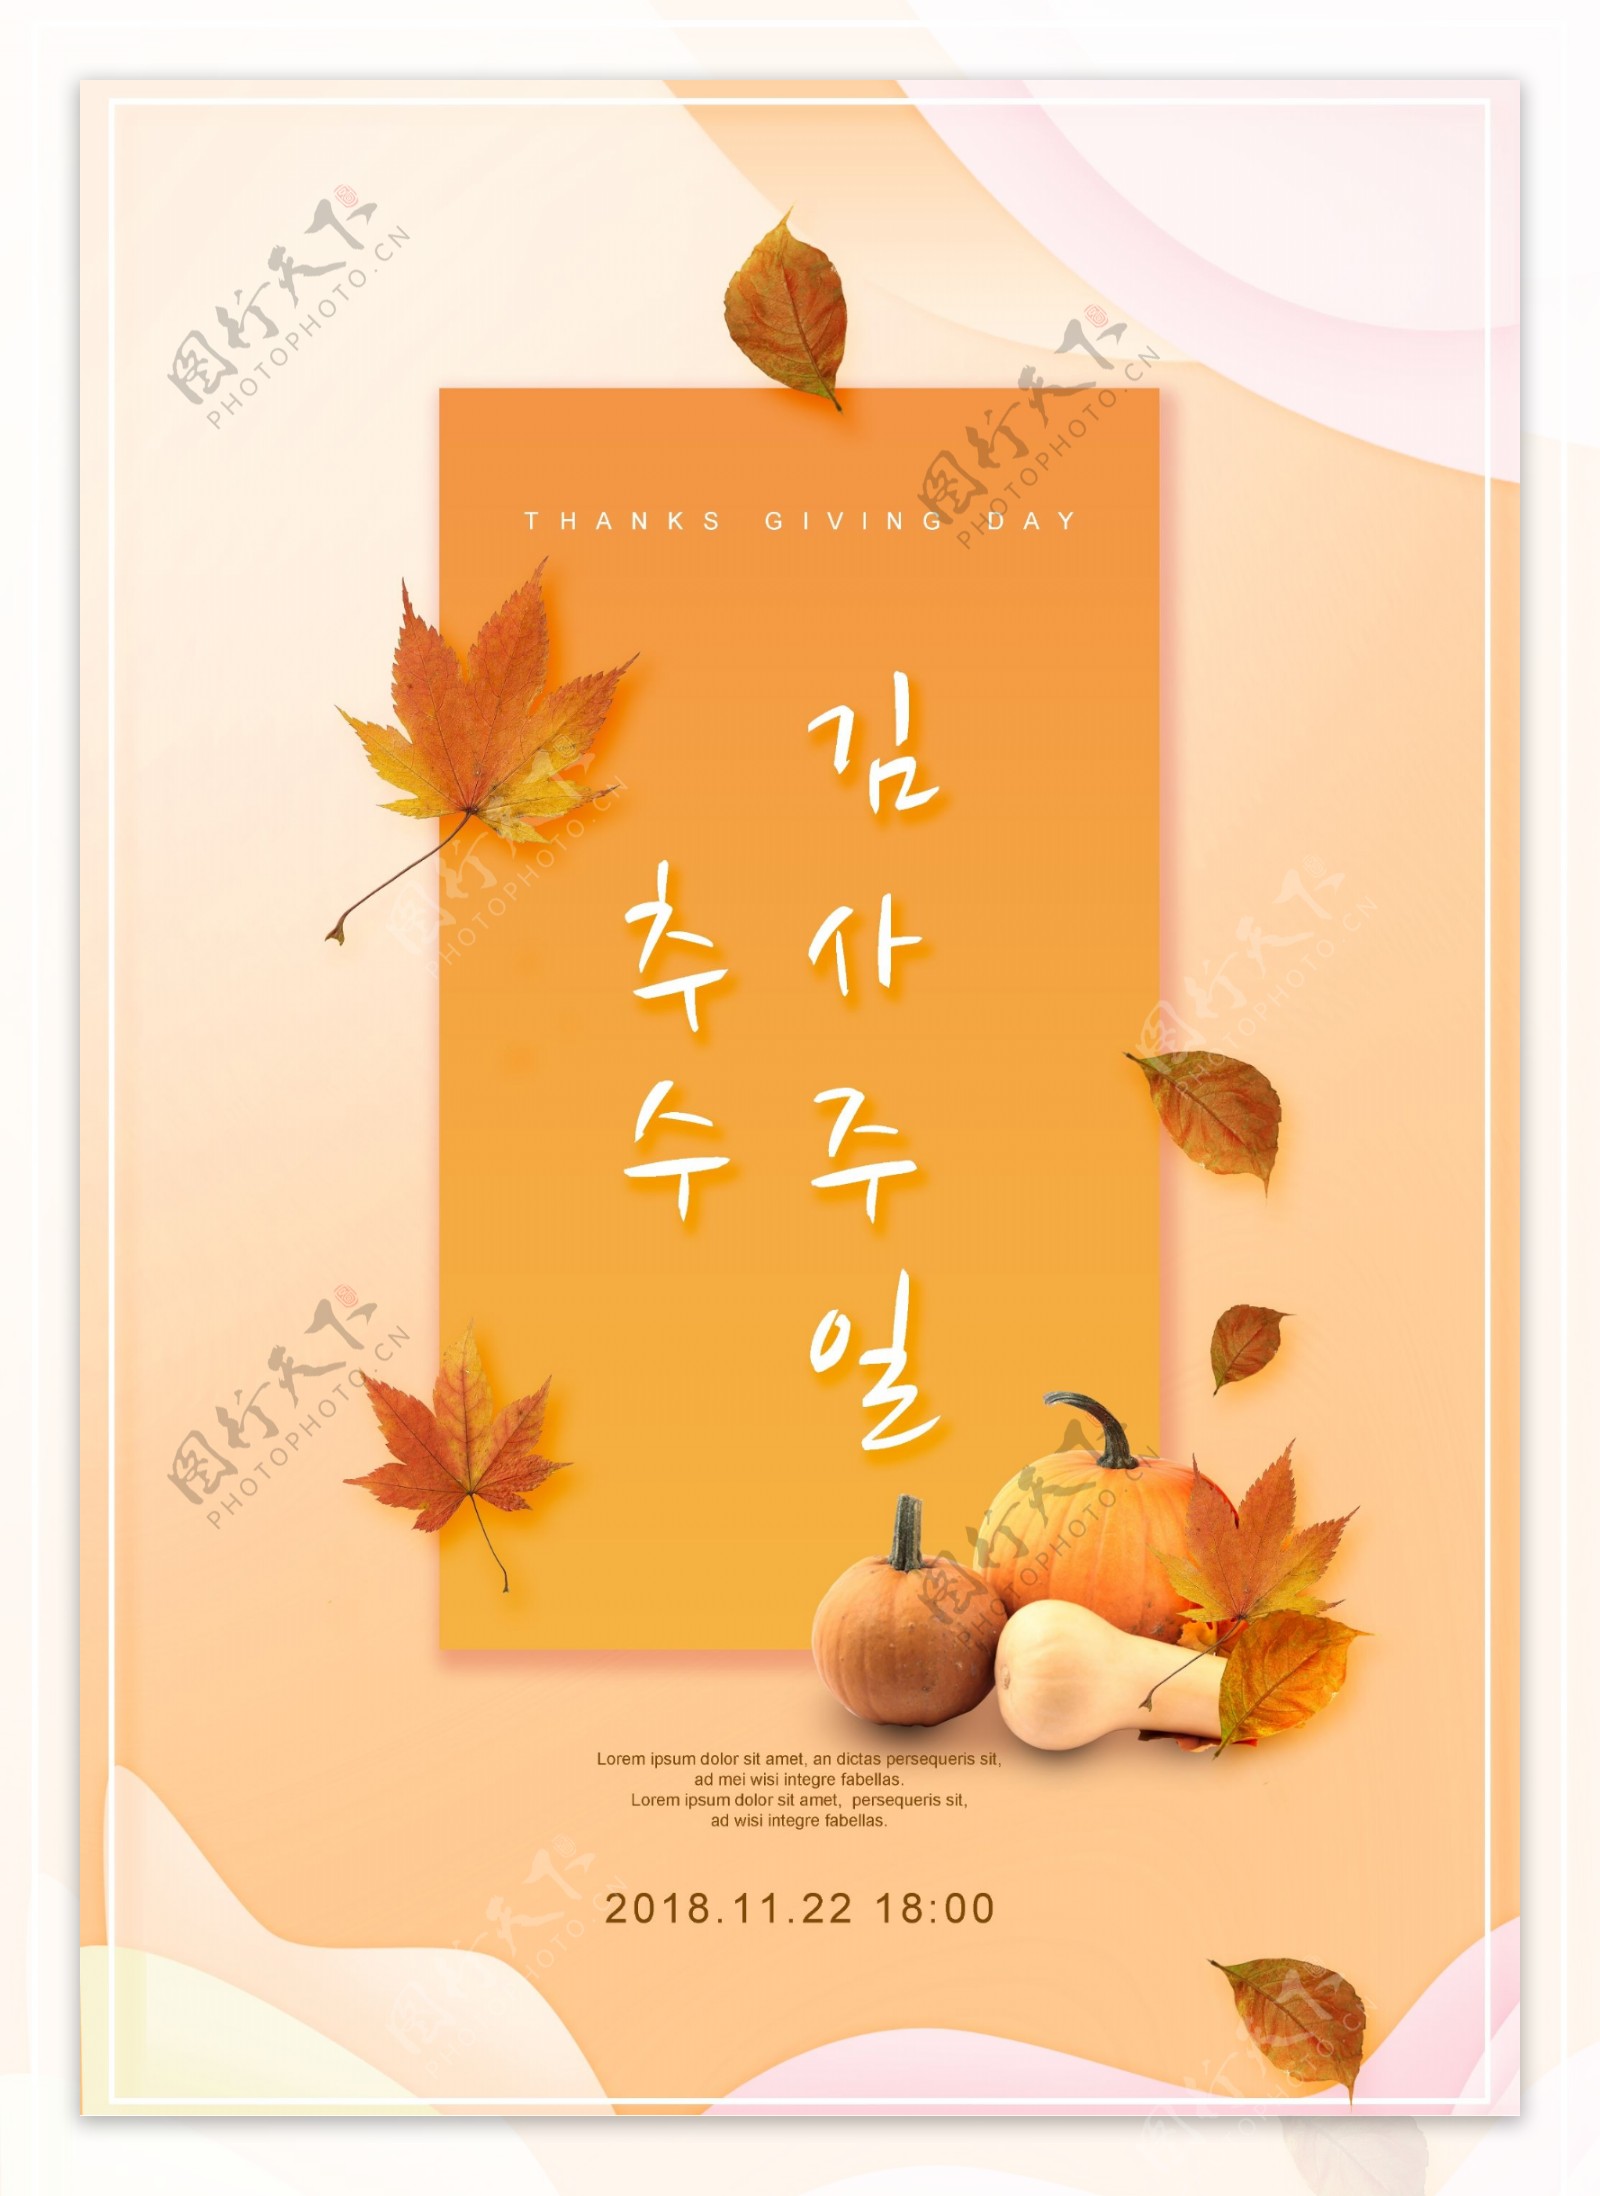 2019年橙色枫叶感恩节海报模板